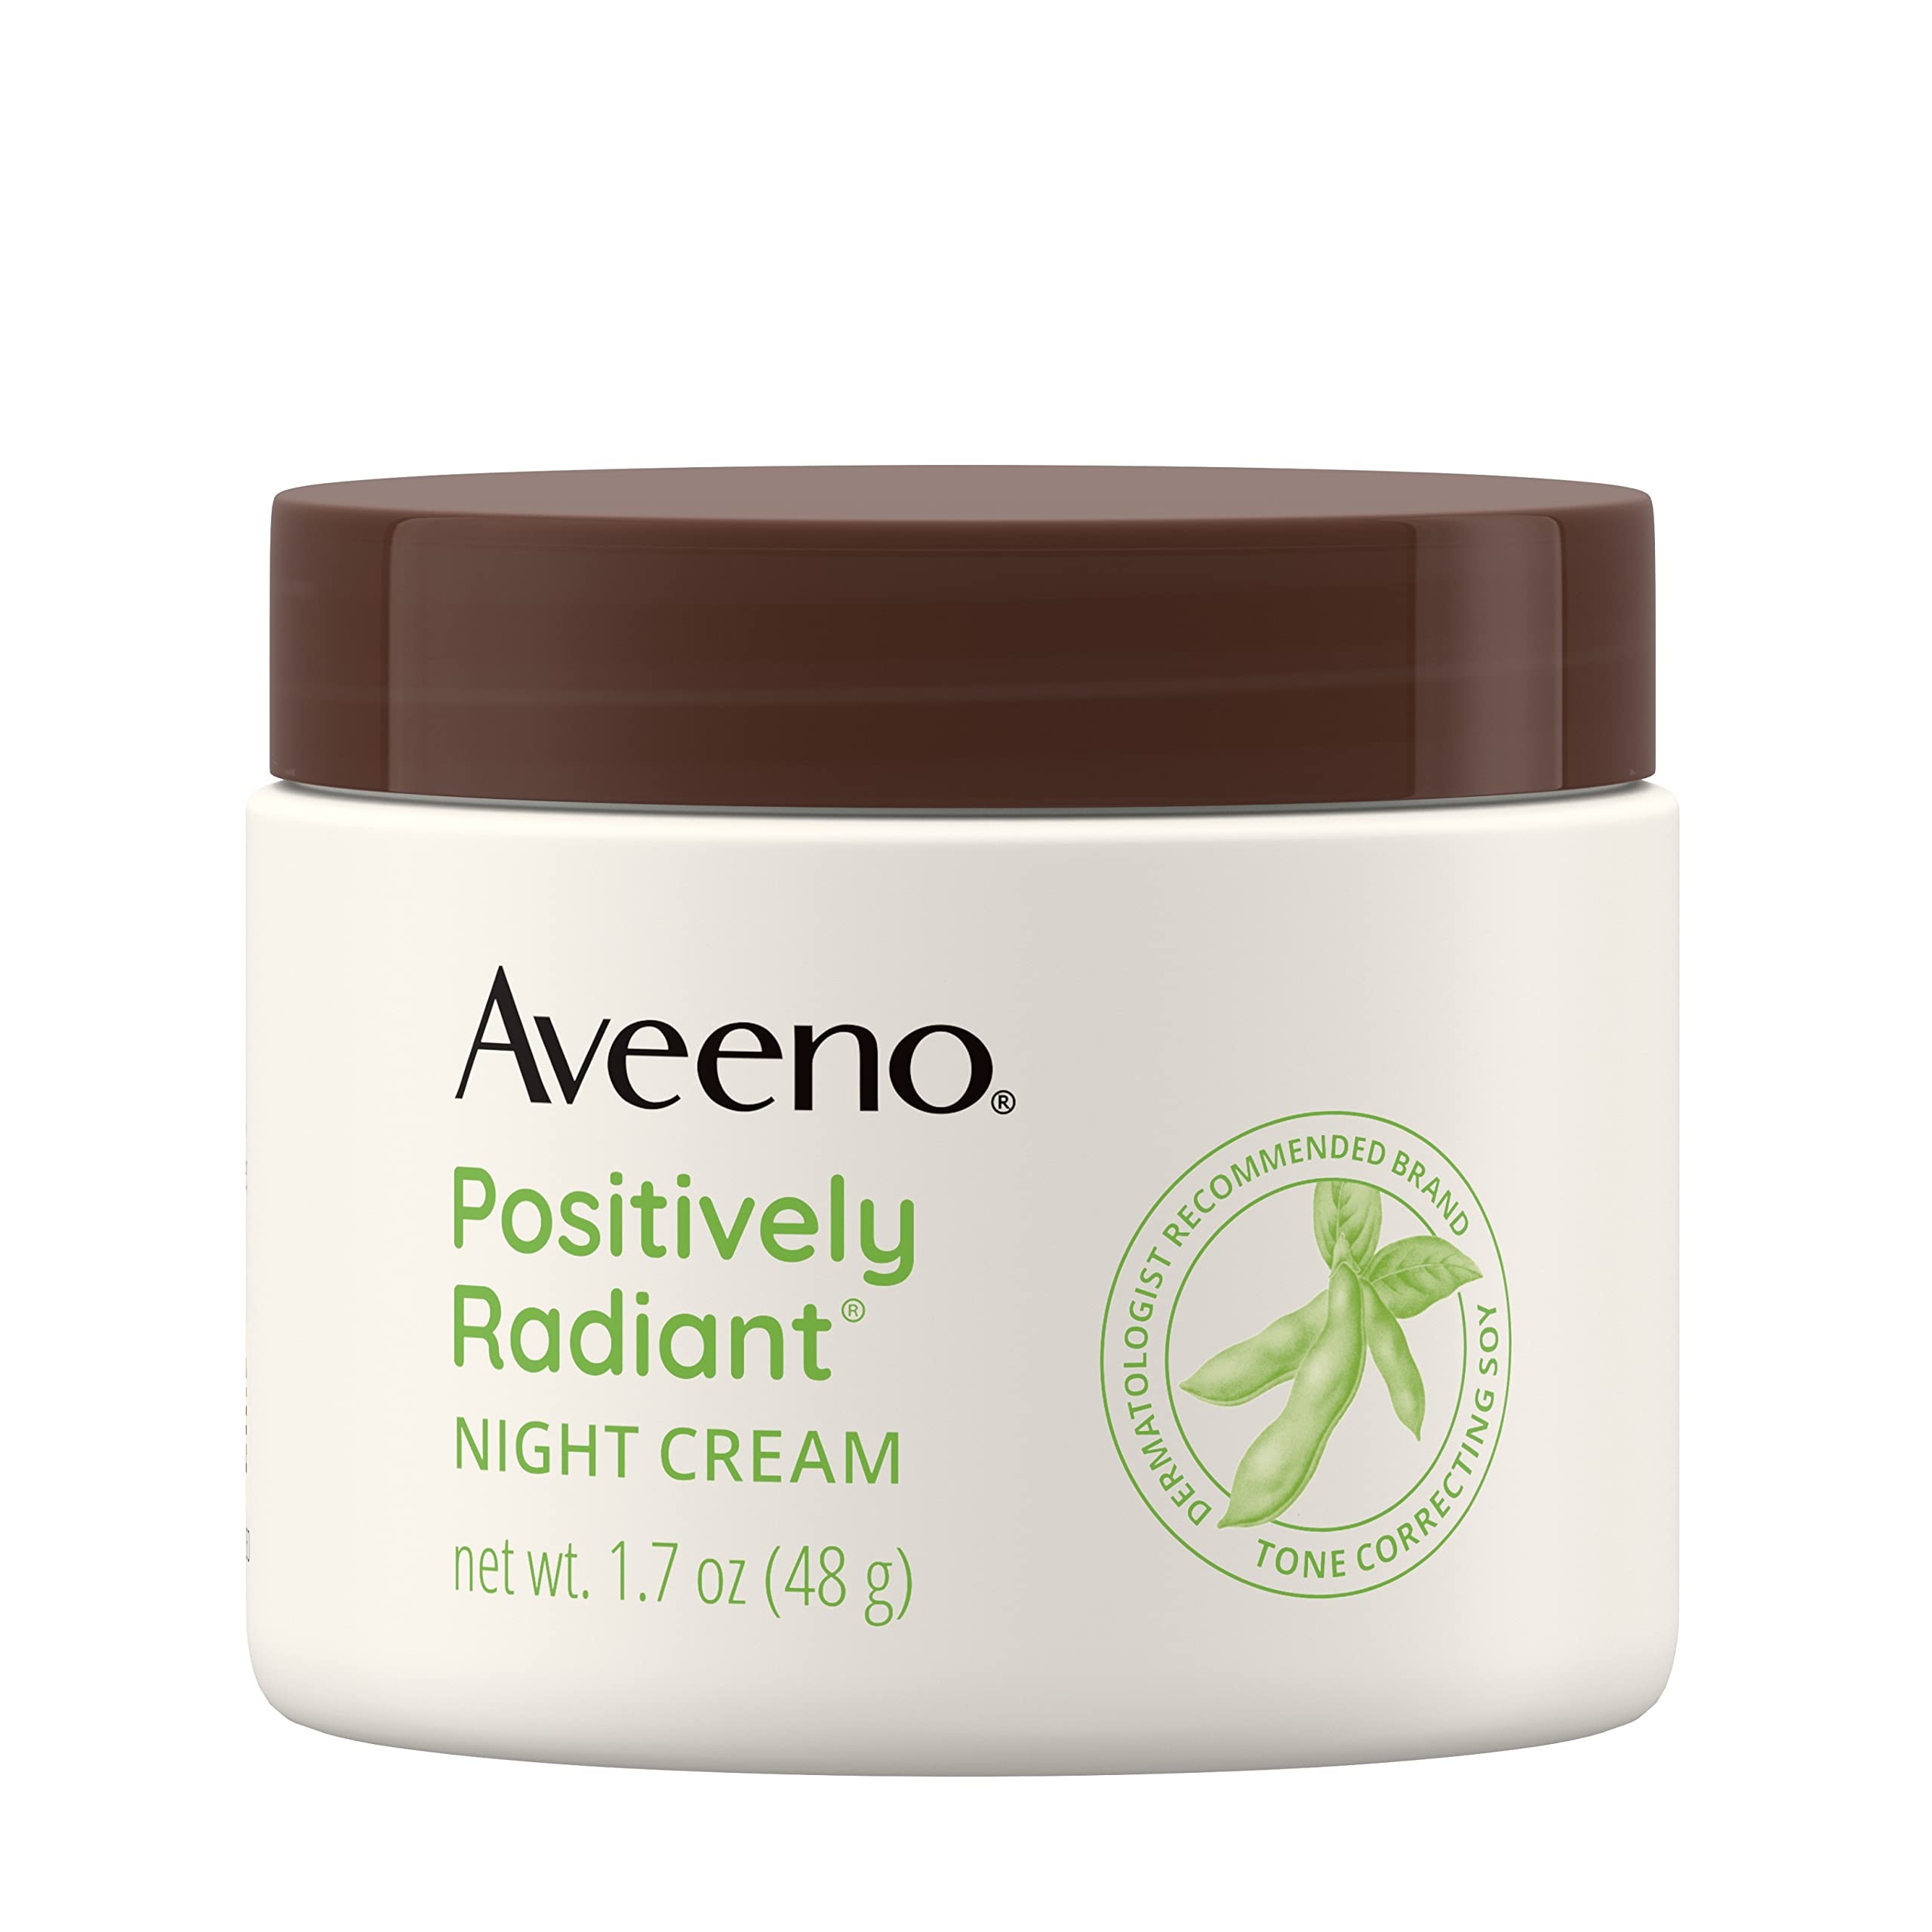 Aveeno Positively Radiant Moisturizing Face & Neck Night cream with Tone correcting Soy & Niacinamide, Night cream Targets Dull